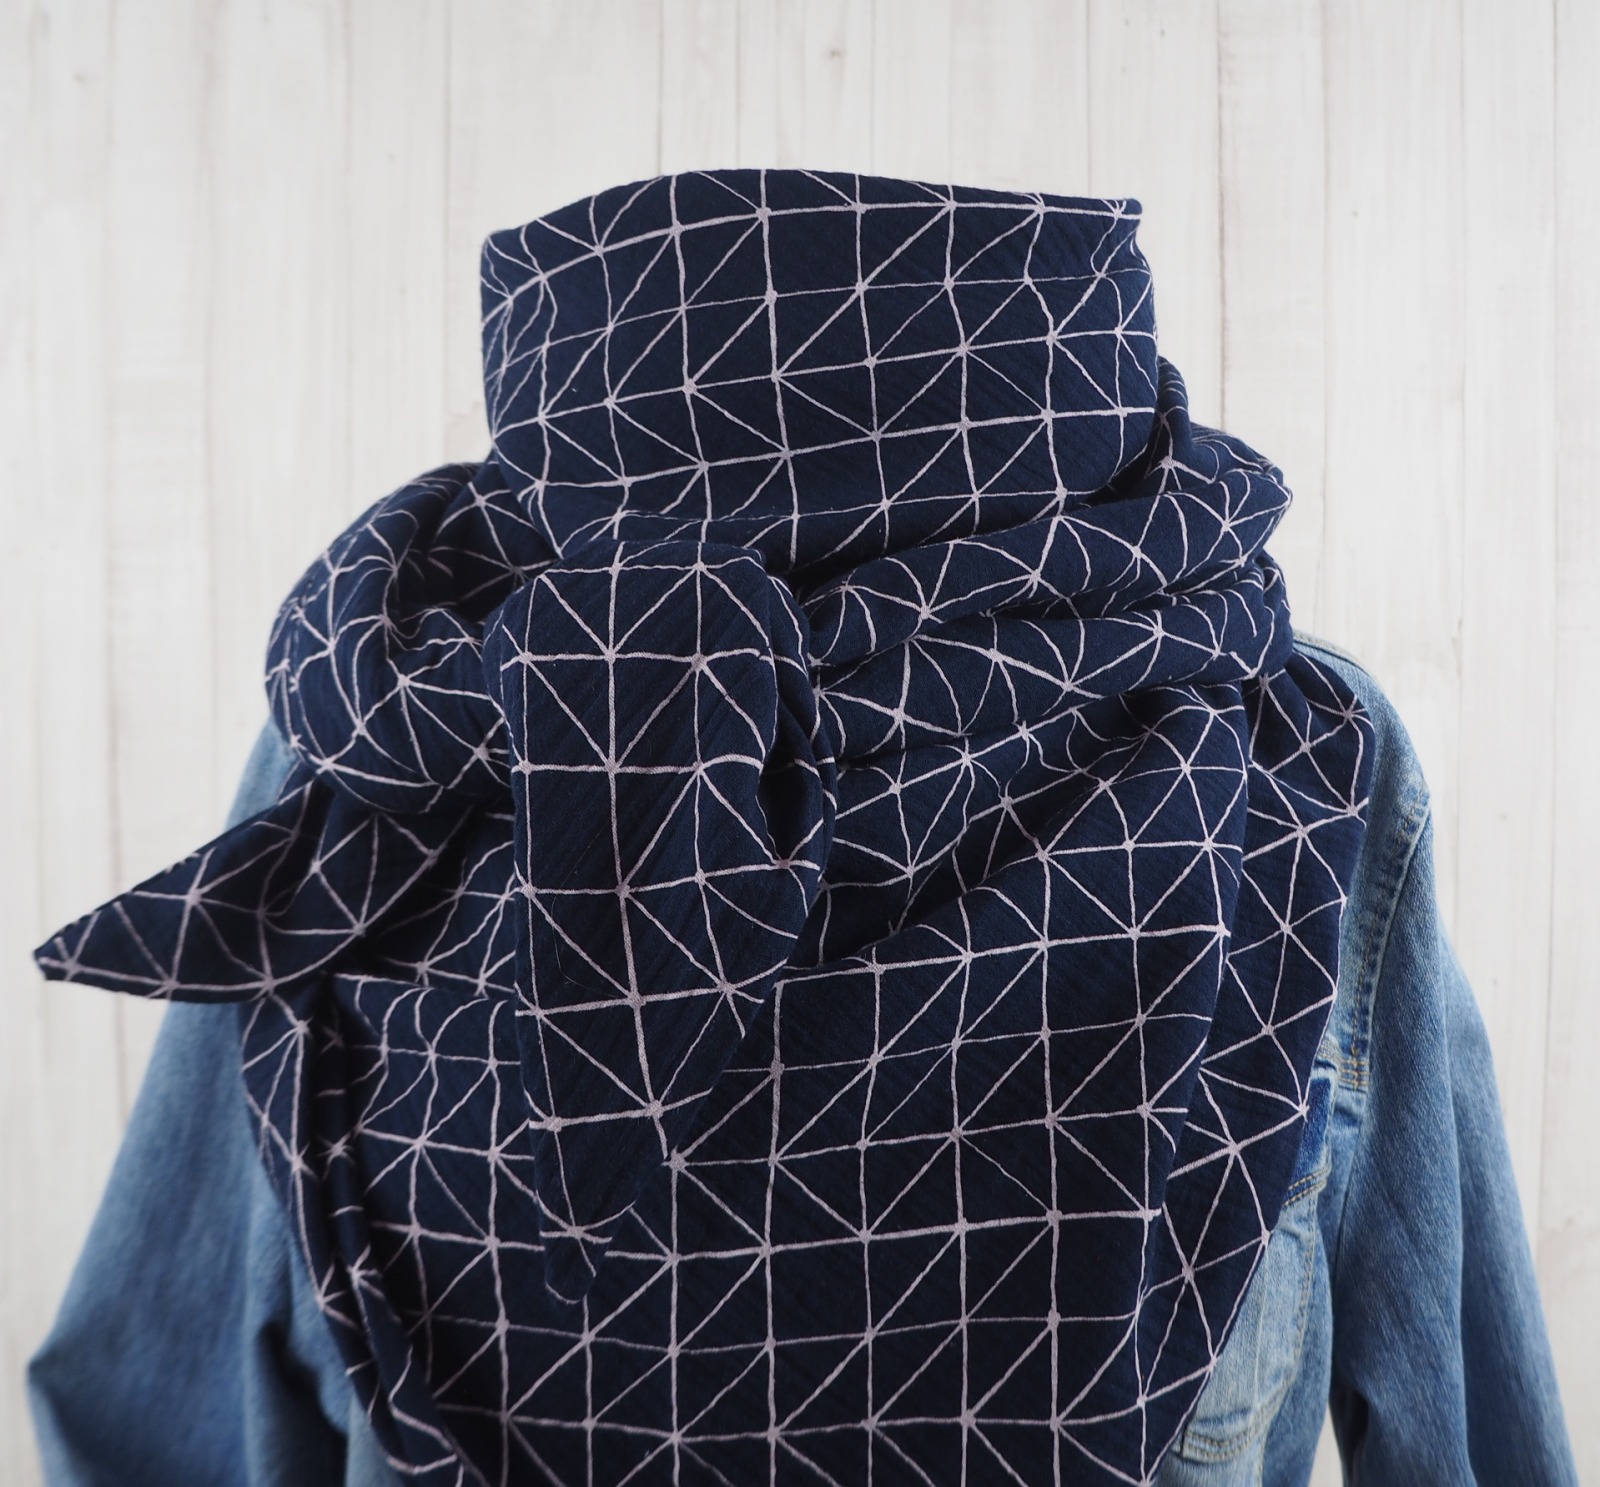 Tuch Dreieckstuch Musselin Damen Schal dunkelblau mit weißen Linien XXL Tuch aus Baumwolle Mamatuch 2